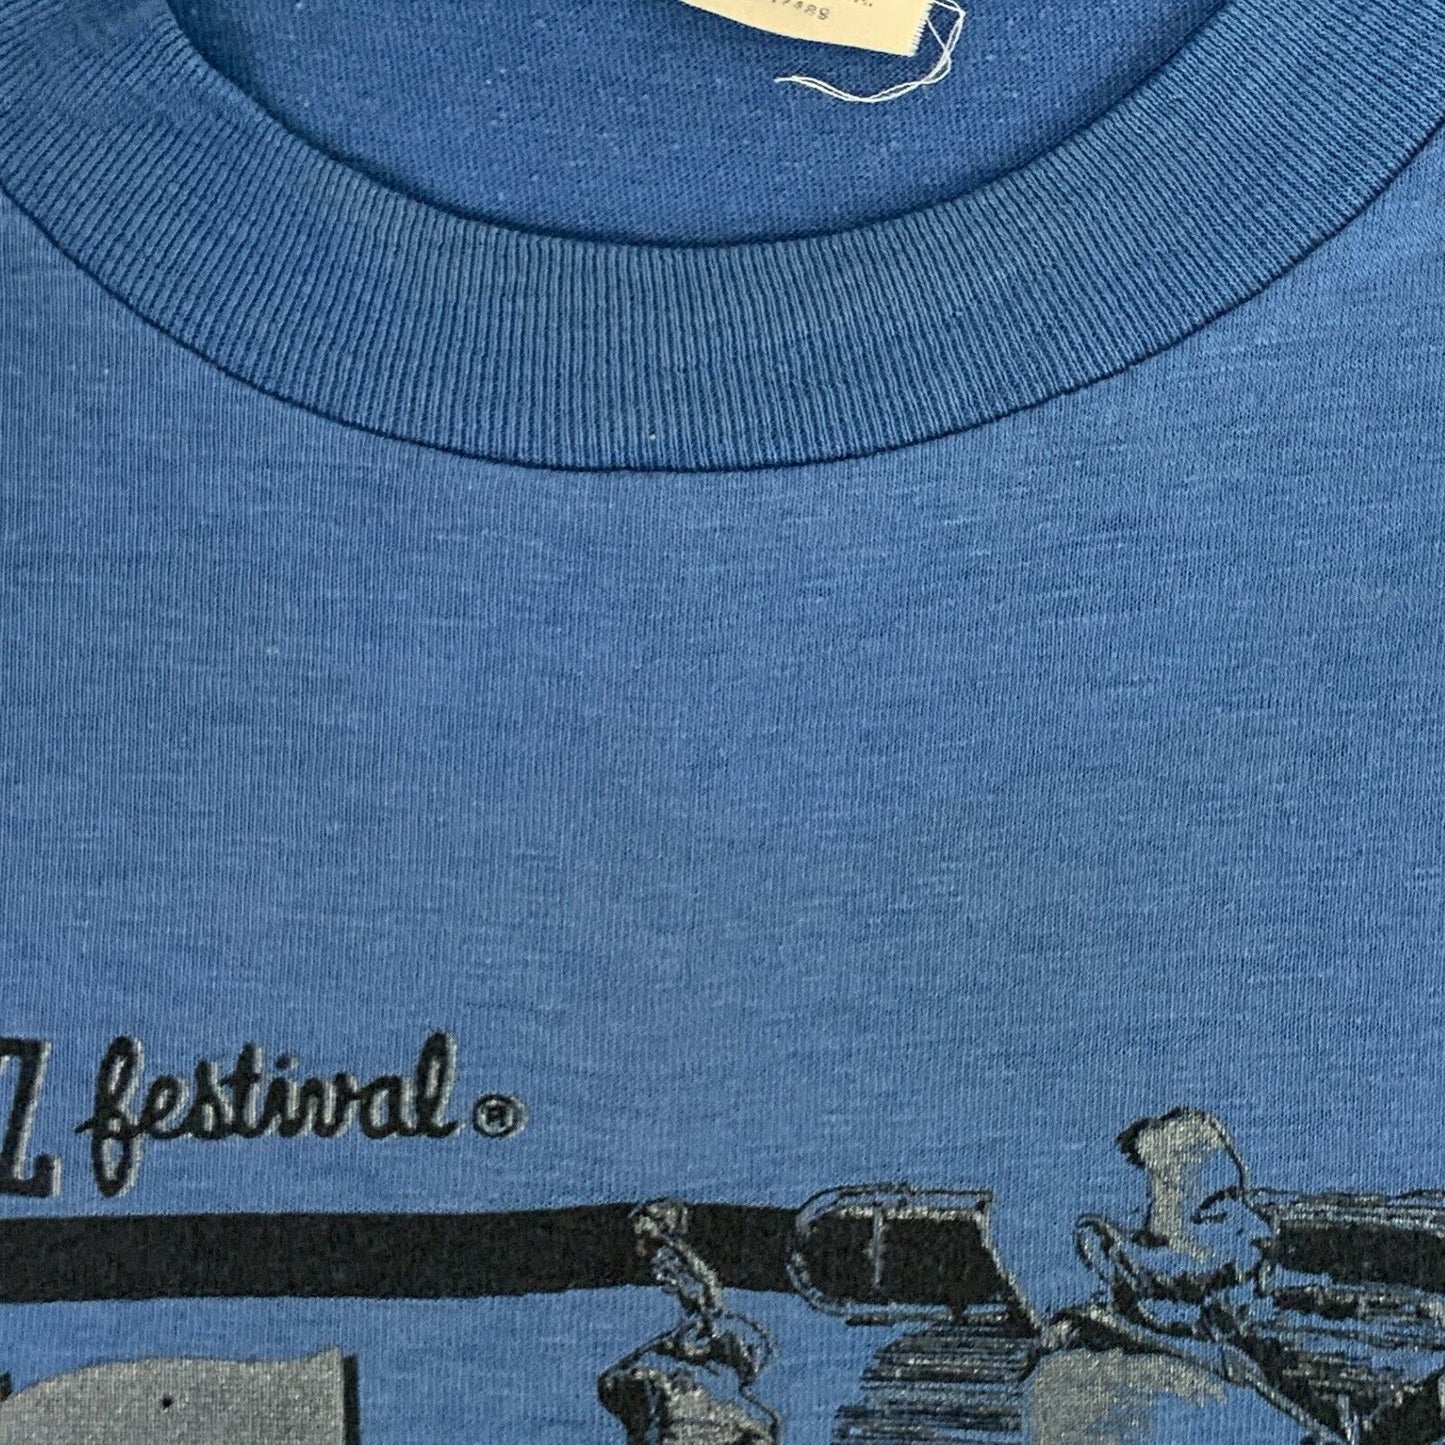 1982 年蒙特利爵士音乐节复古 80 年代 T 恤 25 周年纪念美国制造大号